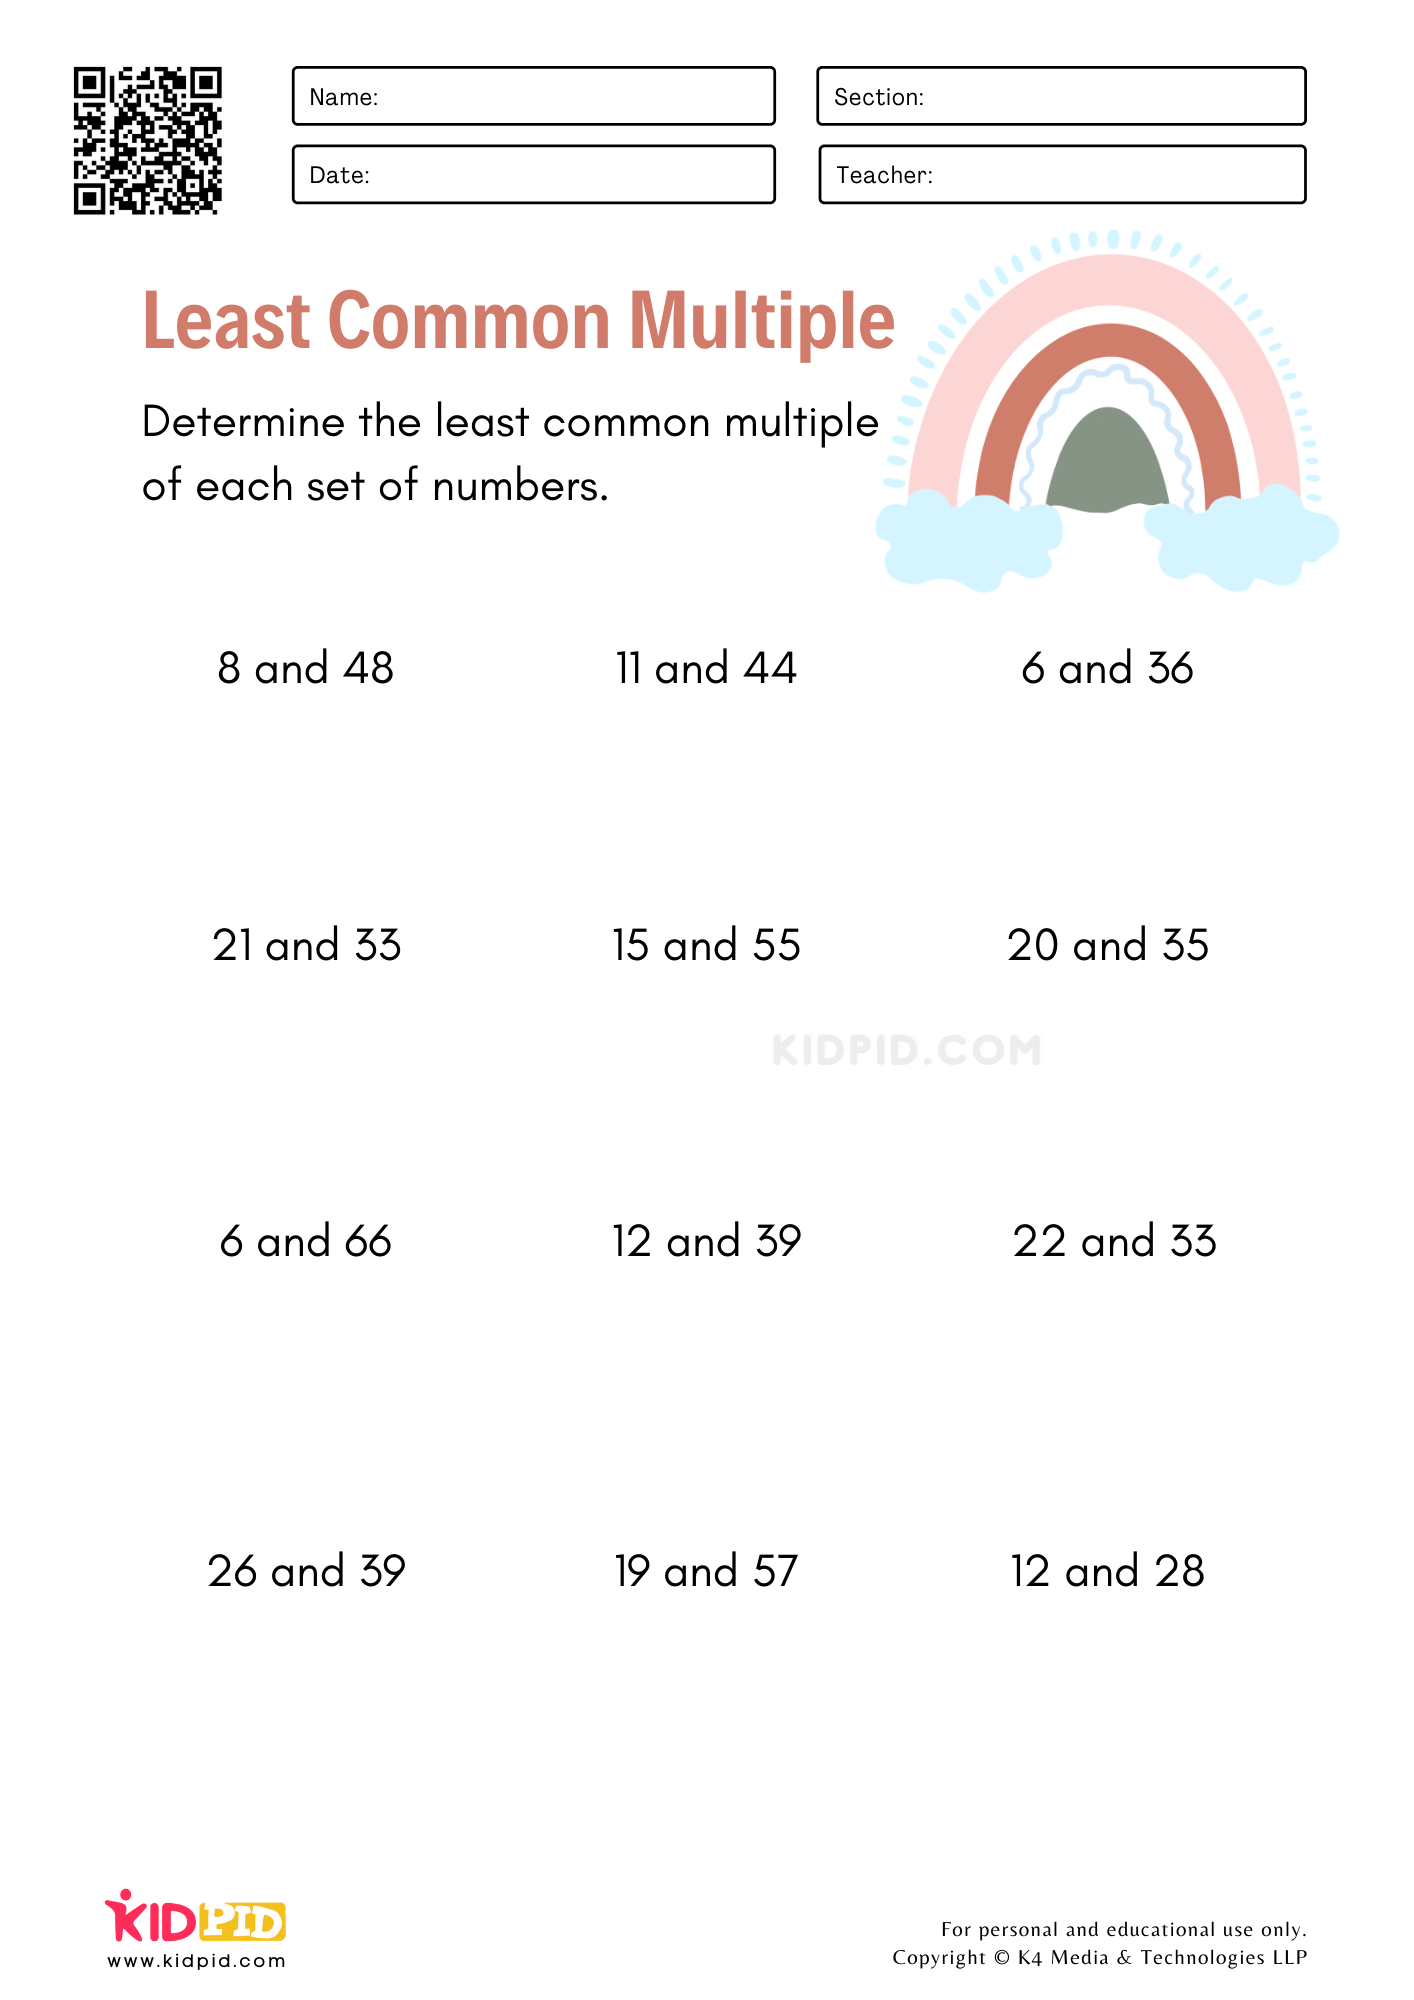 least-common-multiple-worksheets-kidpid